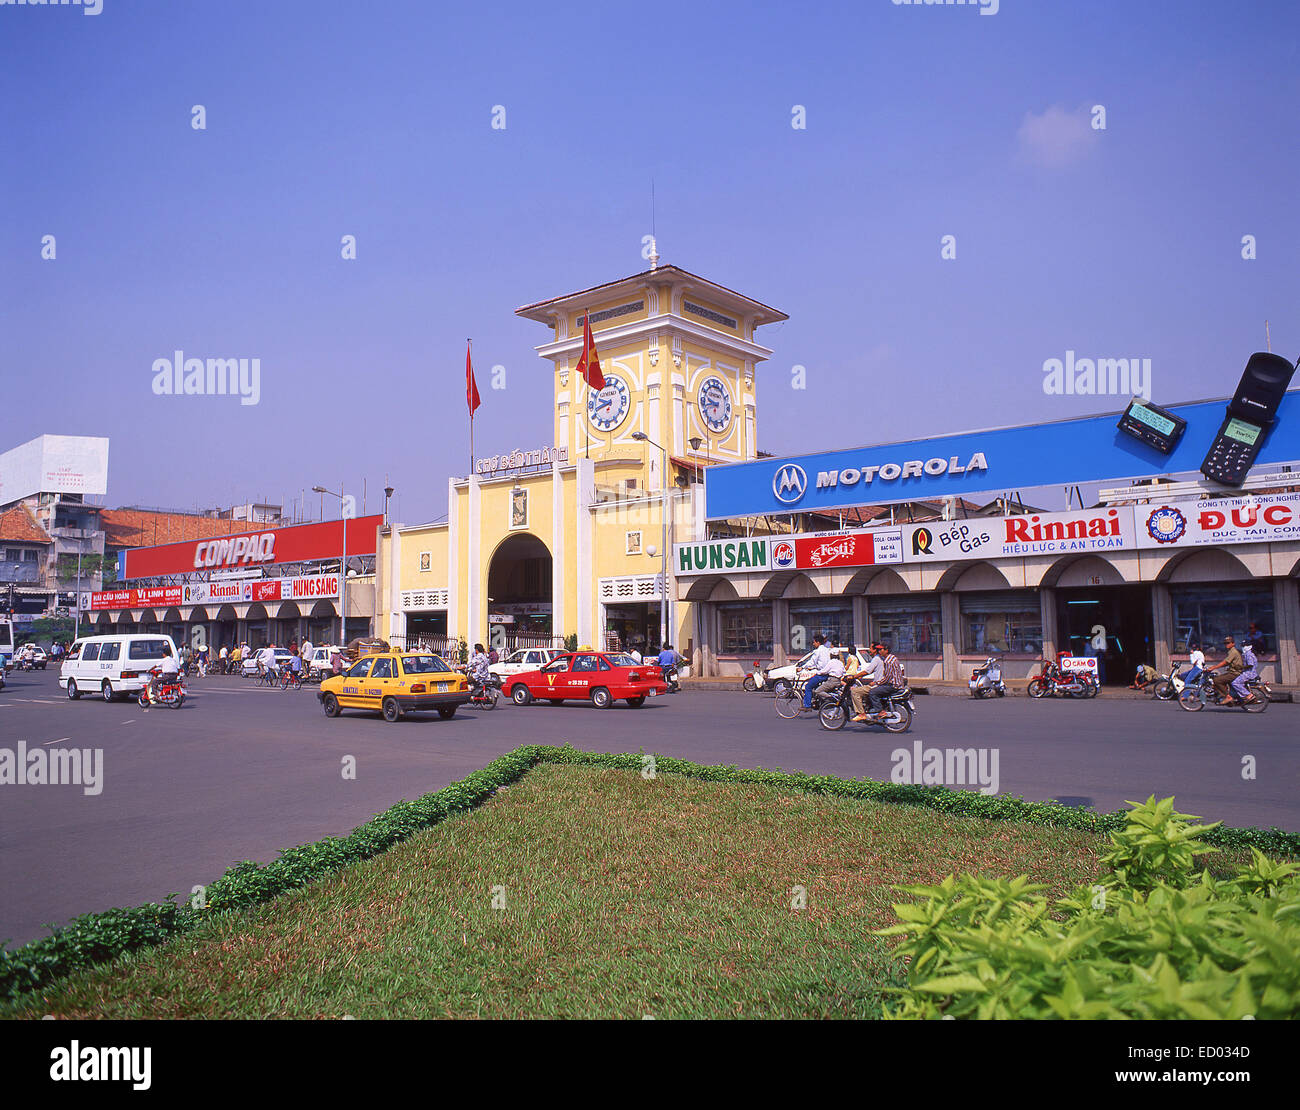 L'entrée du marché, marché de Ben Thanh, Phan Bội Châu, Bến Thành, Ho Chi Minh Ville (Saigon), République socialiste du Vietnam Banque D'Images